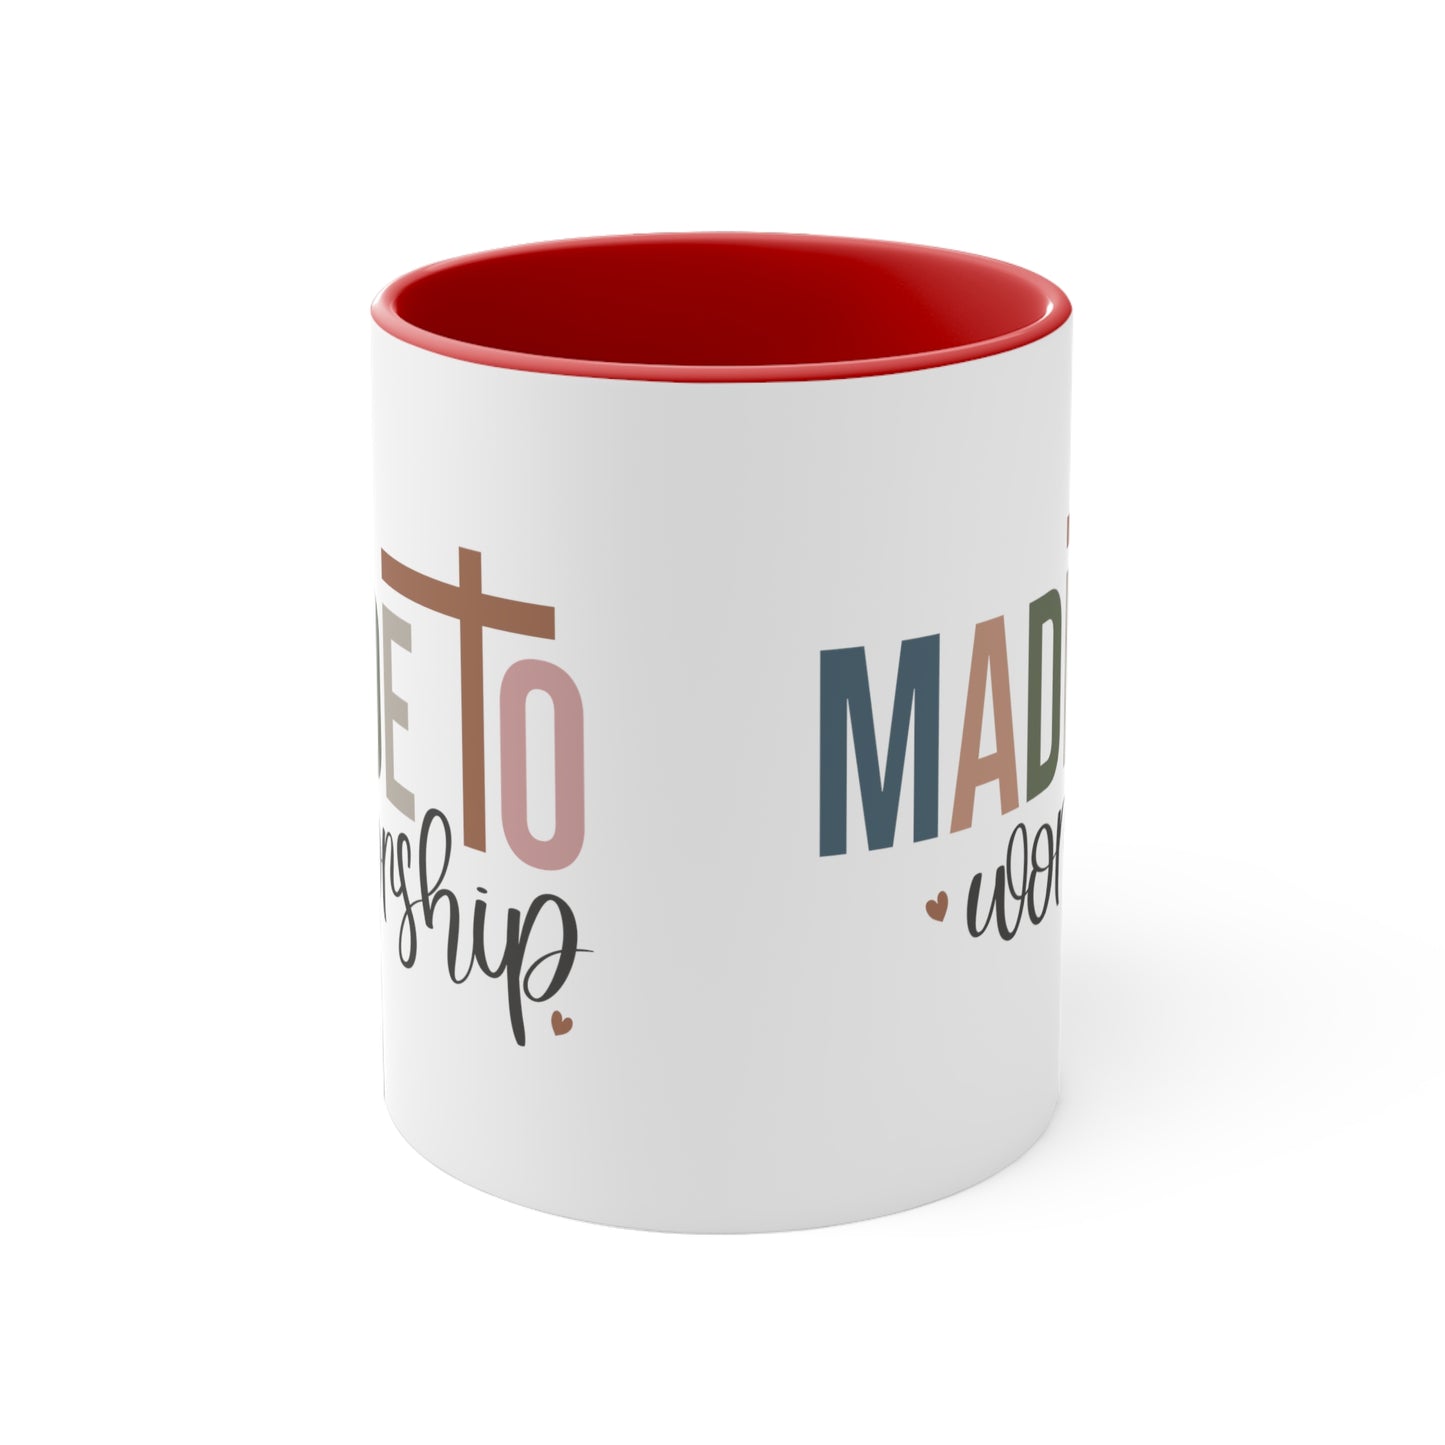 Made to Worship,  Coffee Mug, 11oz